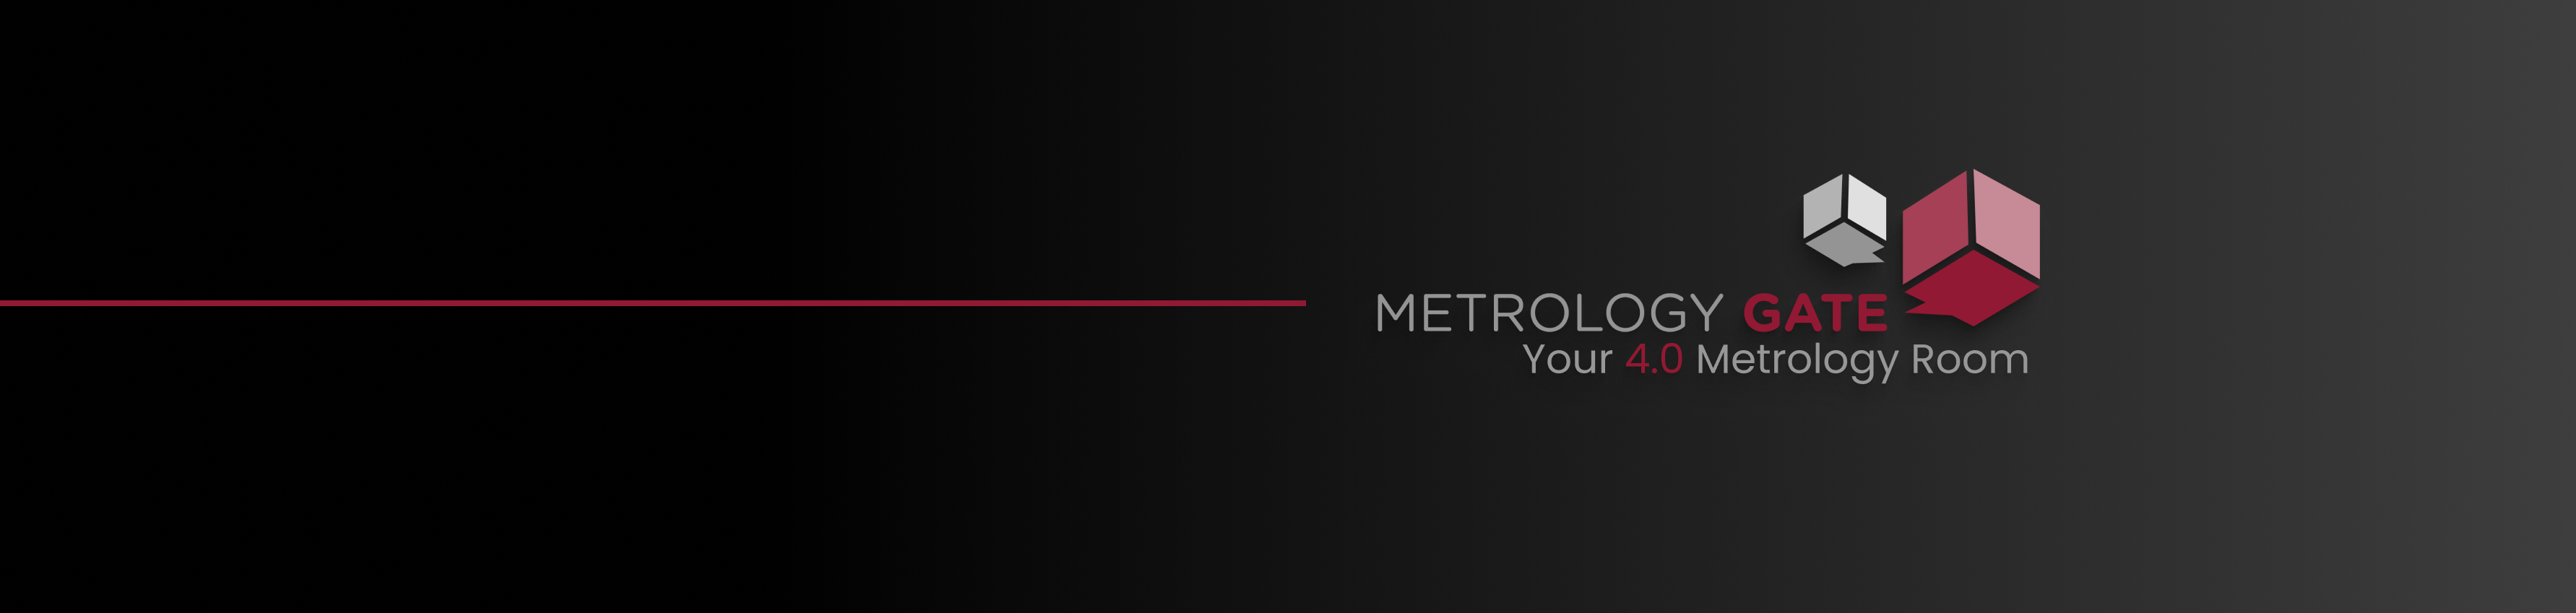 Metrologie Gate 4.0 Metrologieraum